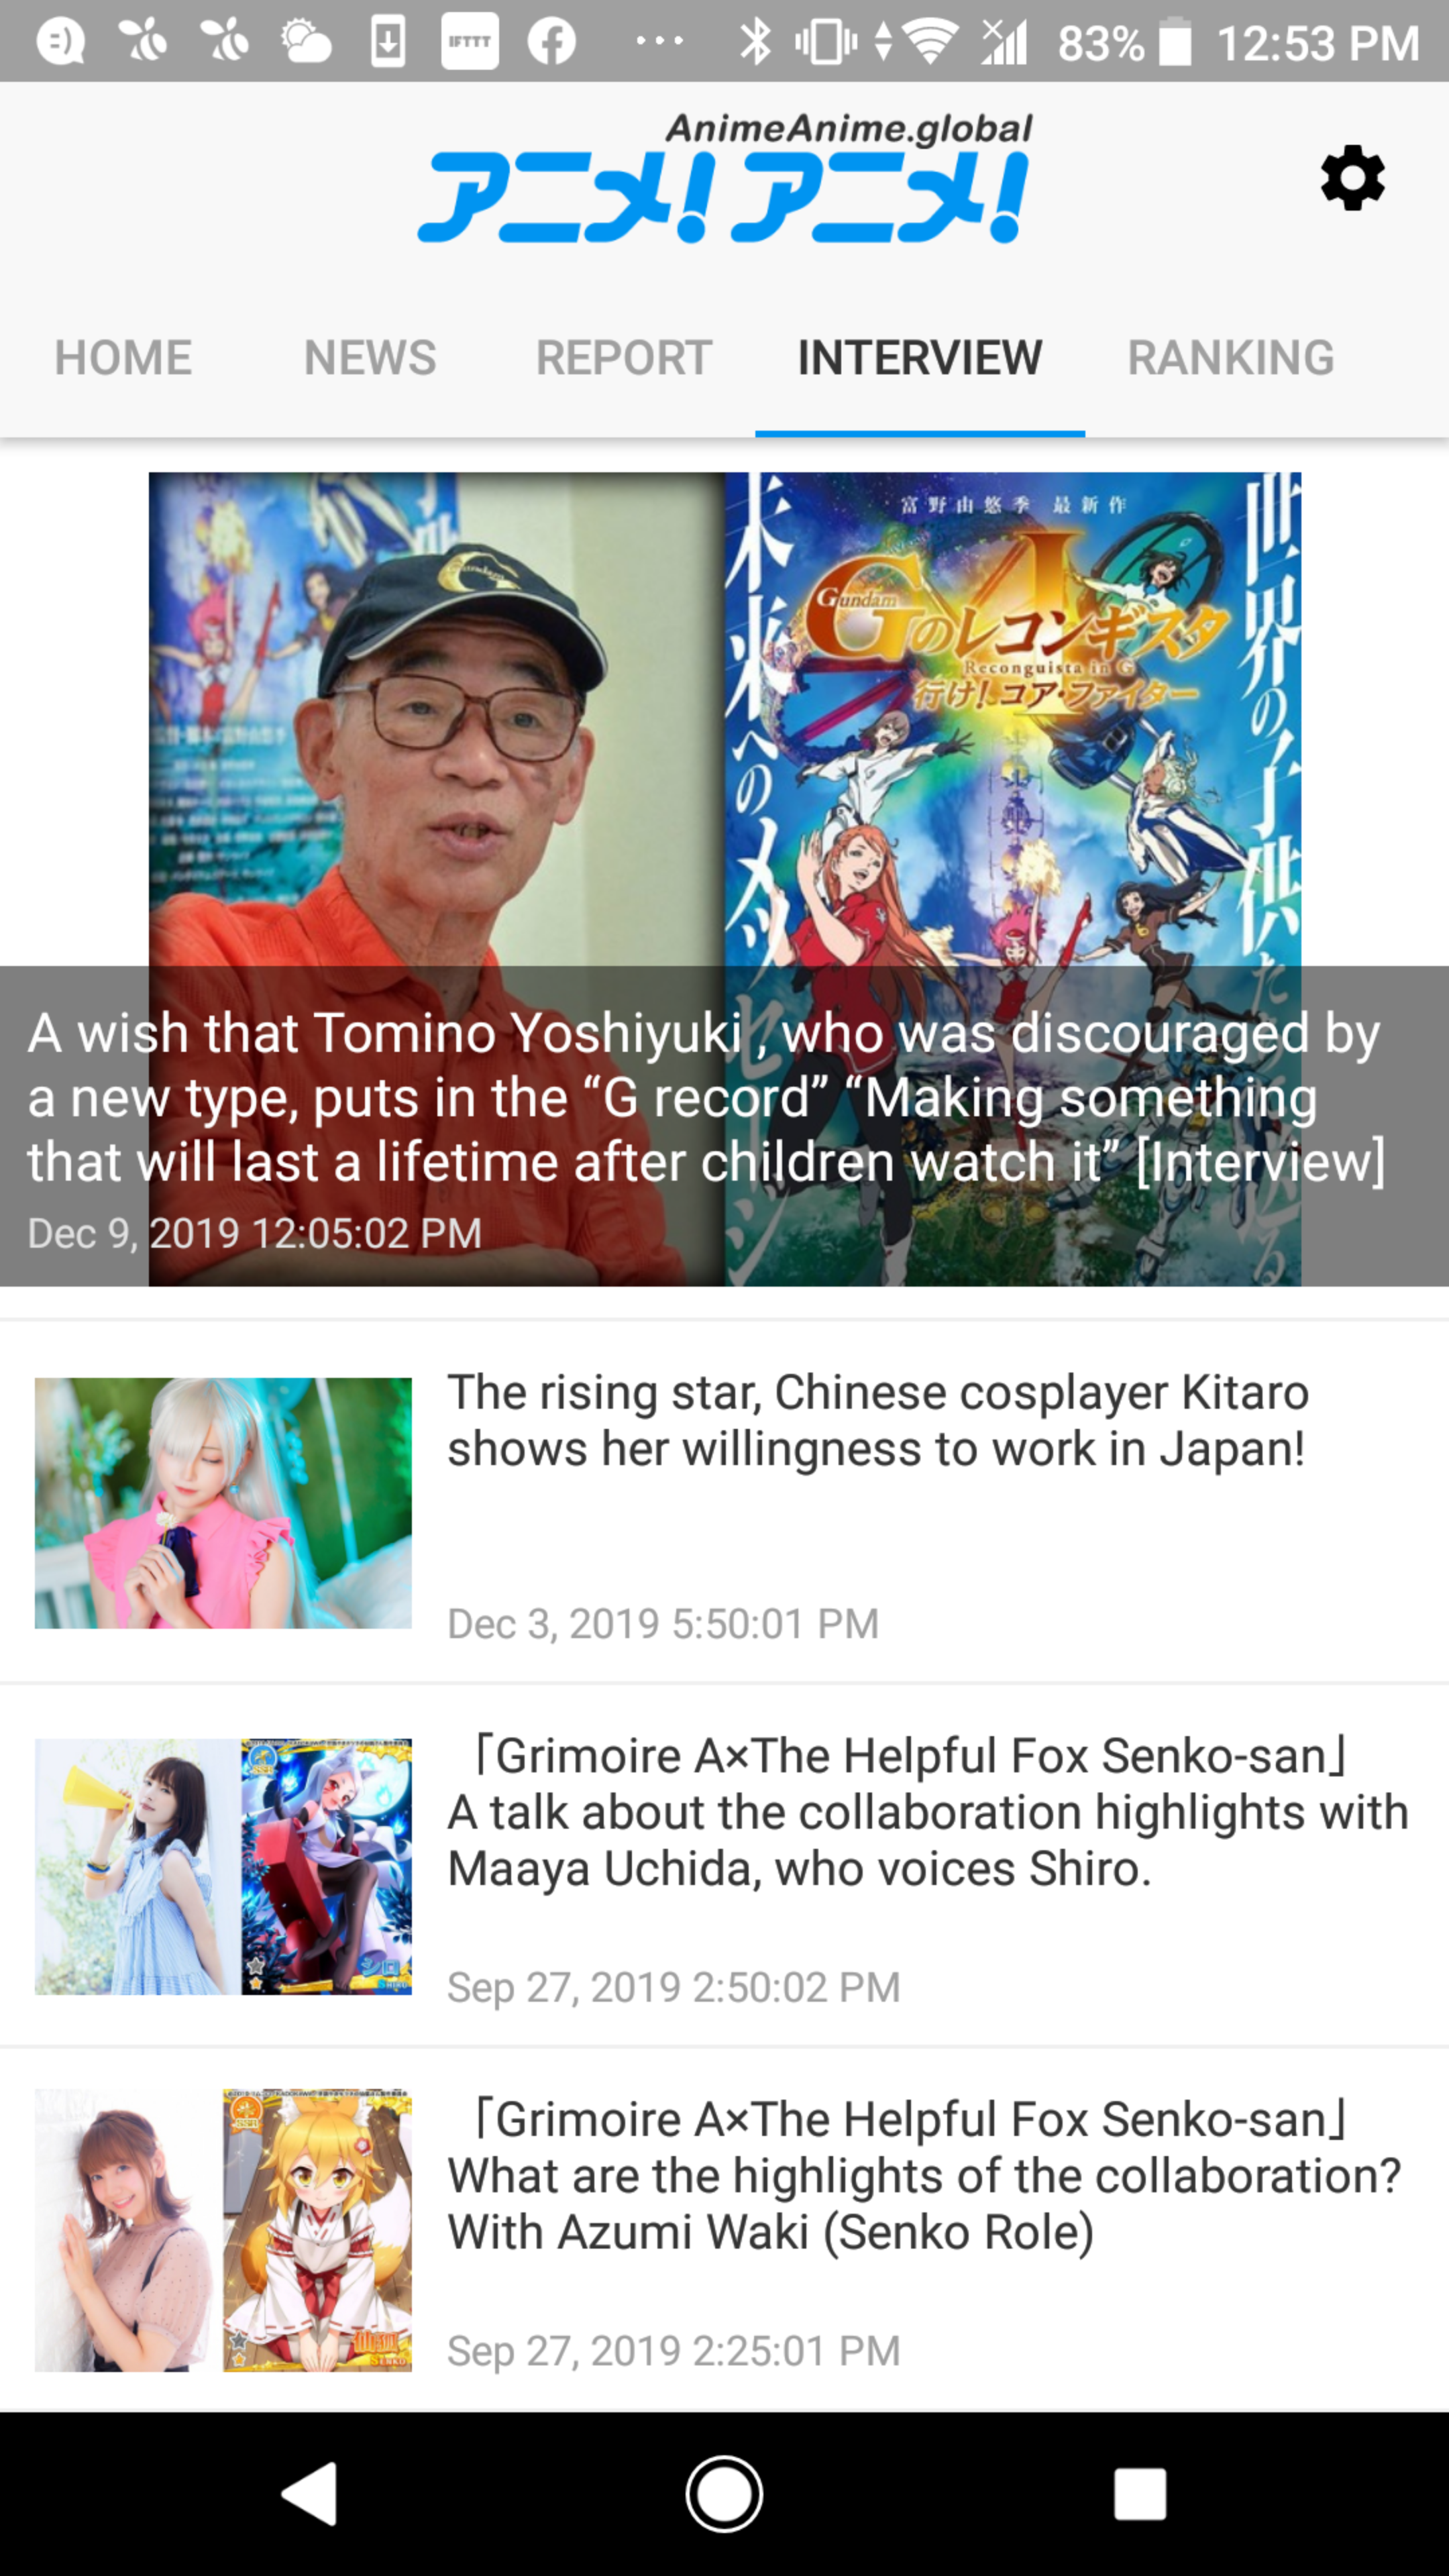 128 オタクコイン関連サービス Tokyo Honyaku Quest による アニメ アニメ の英語翻訳記事の ニュースアプリ をリリース Alis